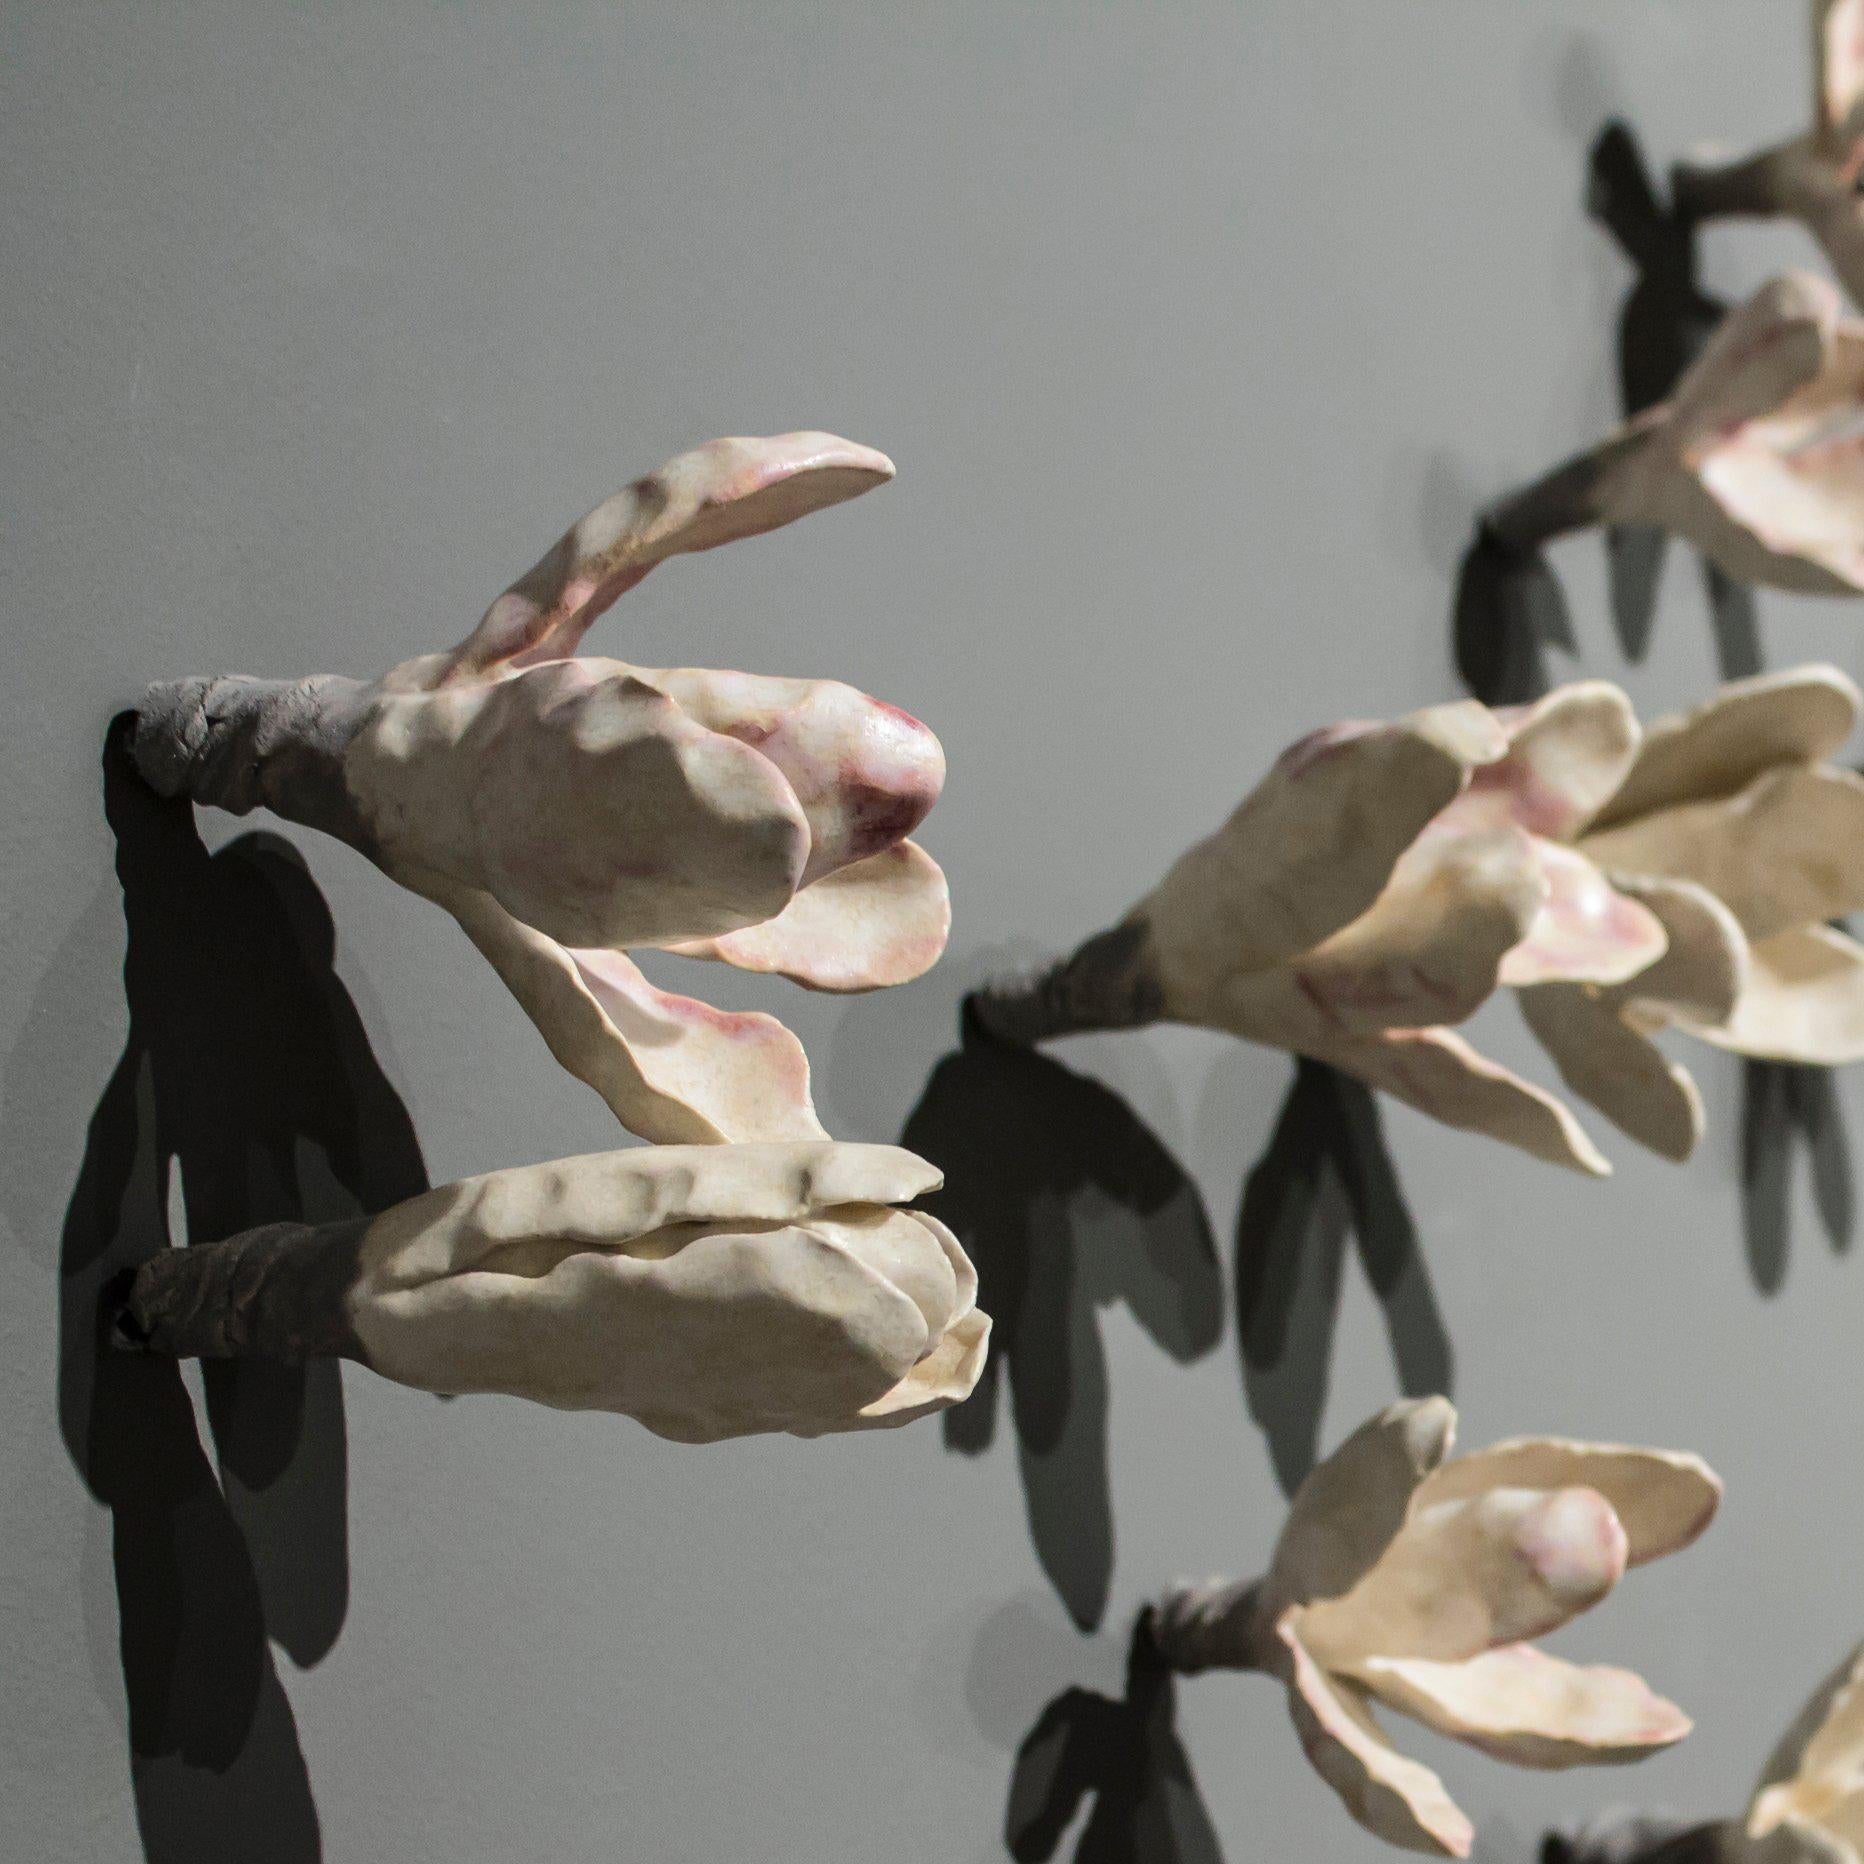 Installation einer Blumenwand  (Naturalismus), Sculpture, von Bradley Sabin